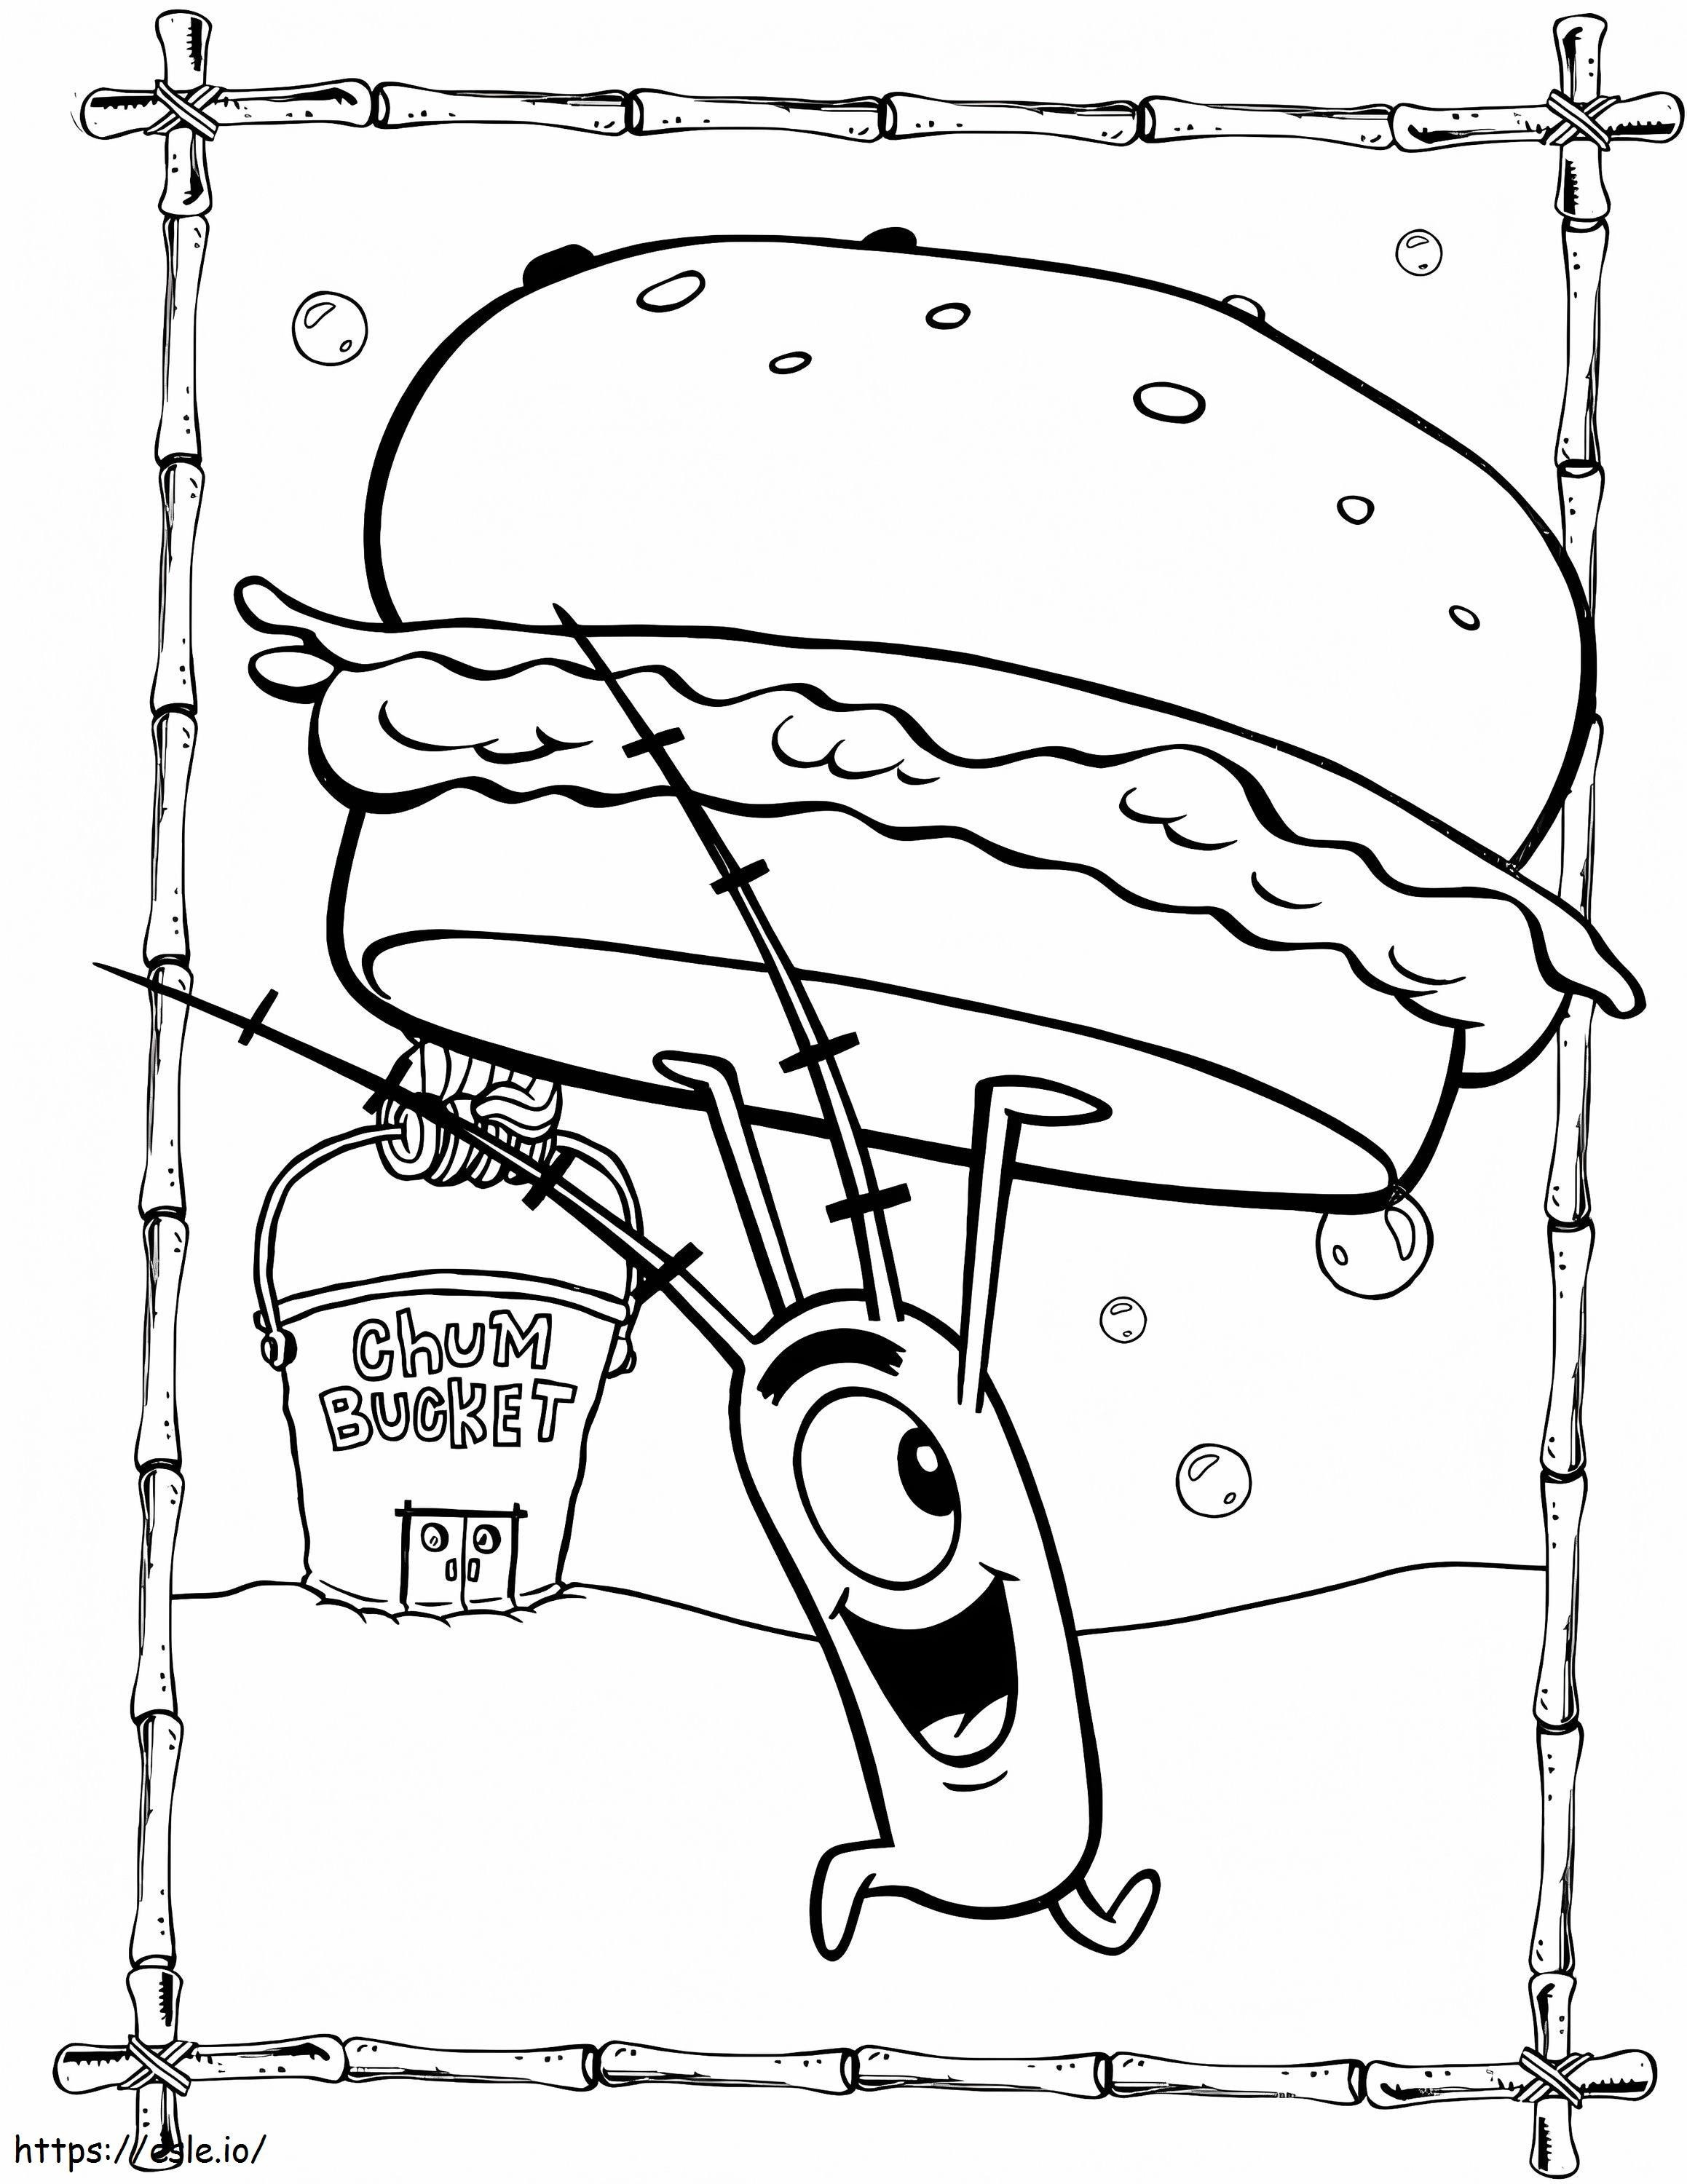 Plankton és Hamburger kifestő